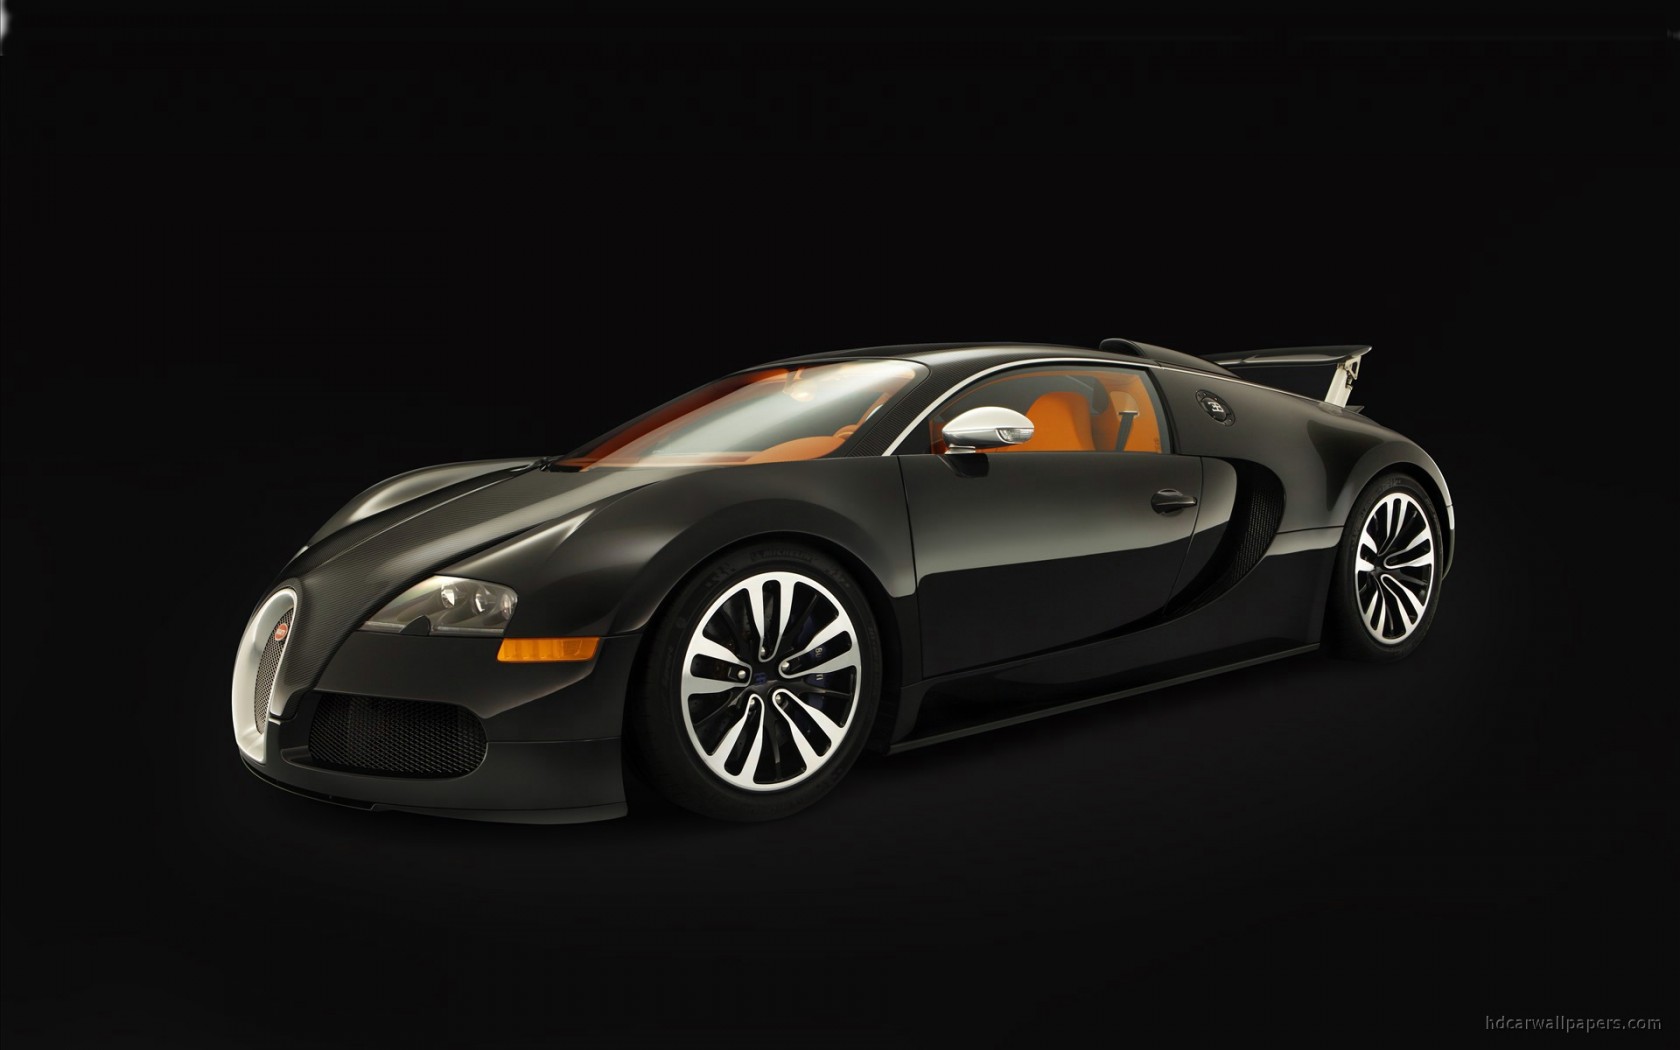 Bugatti Eb Veyron Sang Noir Wallpaper In